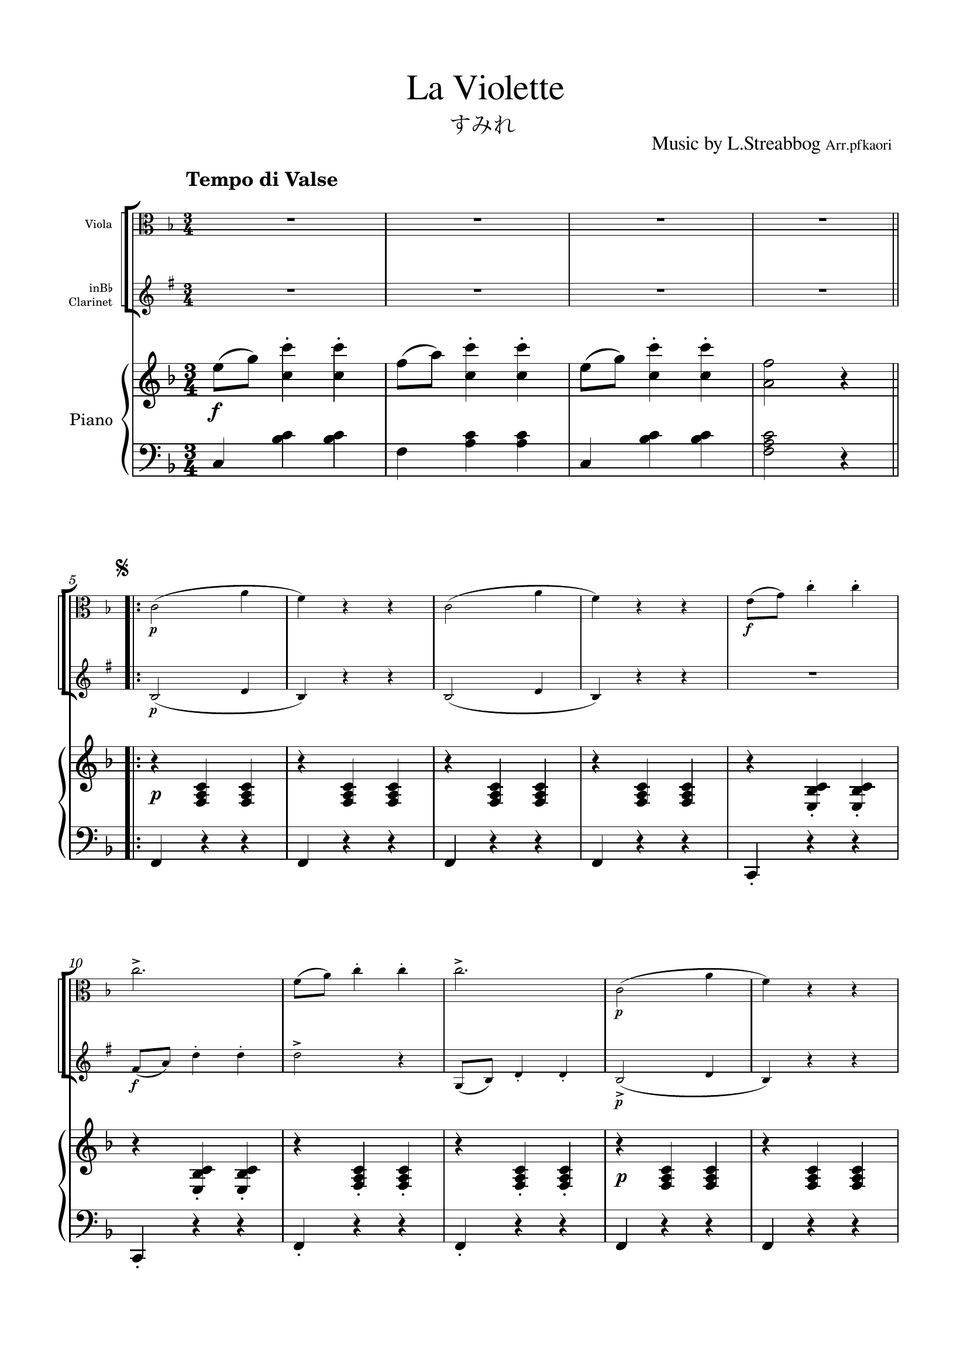 Strea bogg - La Violette (Piano trio / Viola & Clarinet) by pfkaori